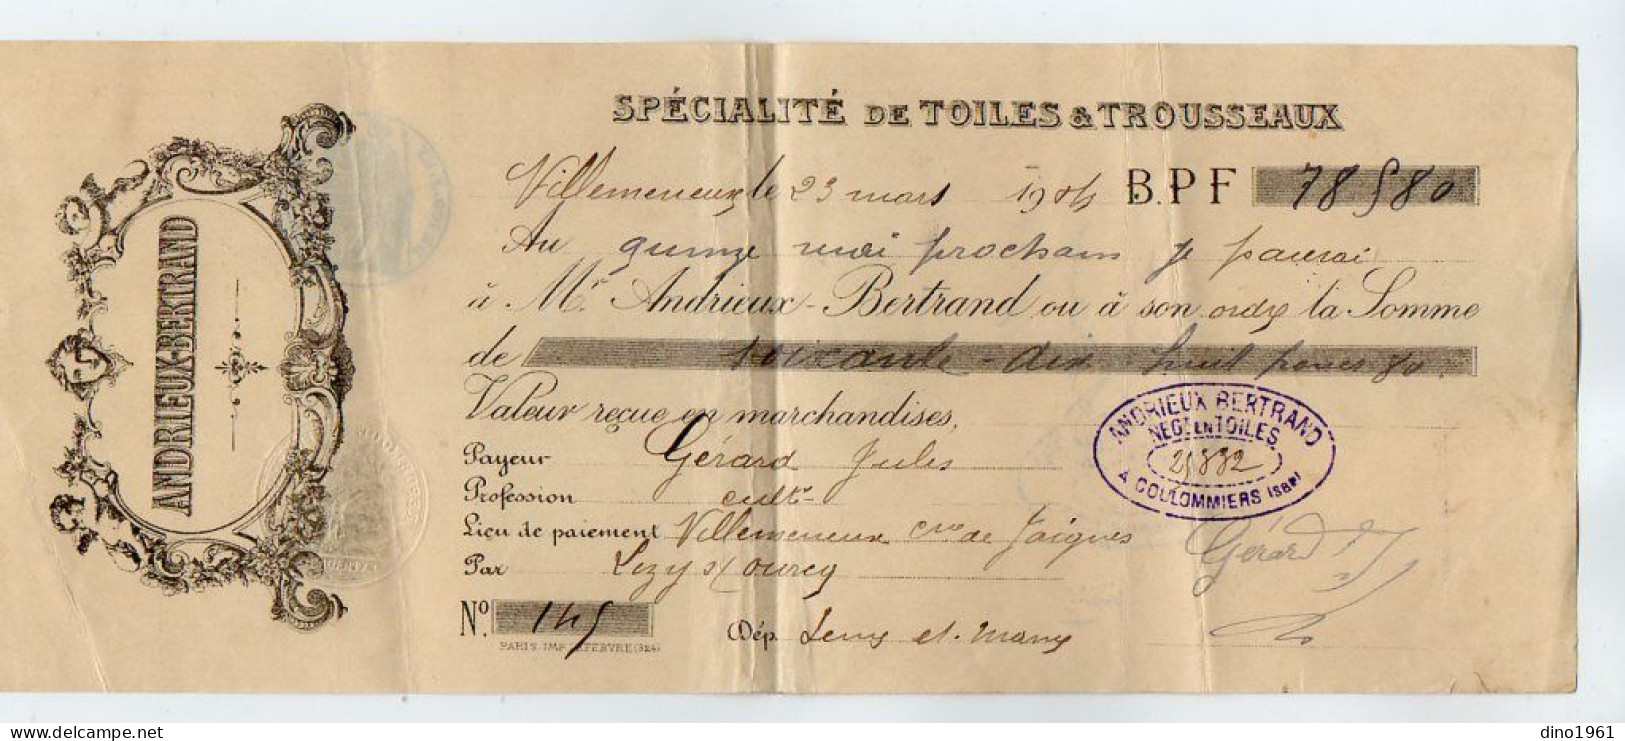 VP22.589 - Lettre De Change - 1914 - Spécialité De Toiles & Trousseaux - ANDRIEUX - BERTRAND à JAIGNES & COULOMMIERS - Bills Of Exchange